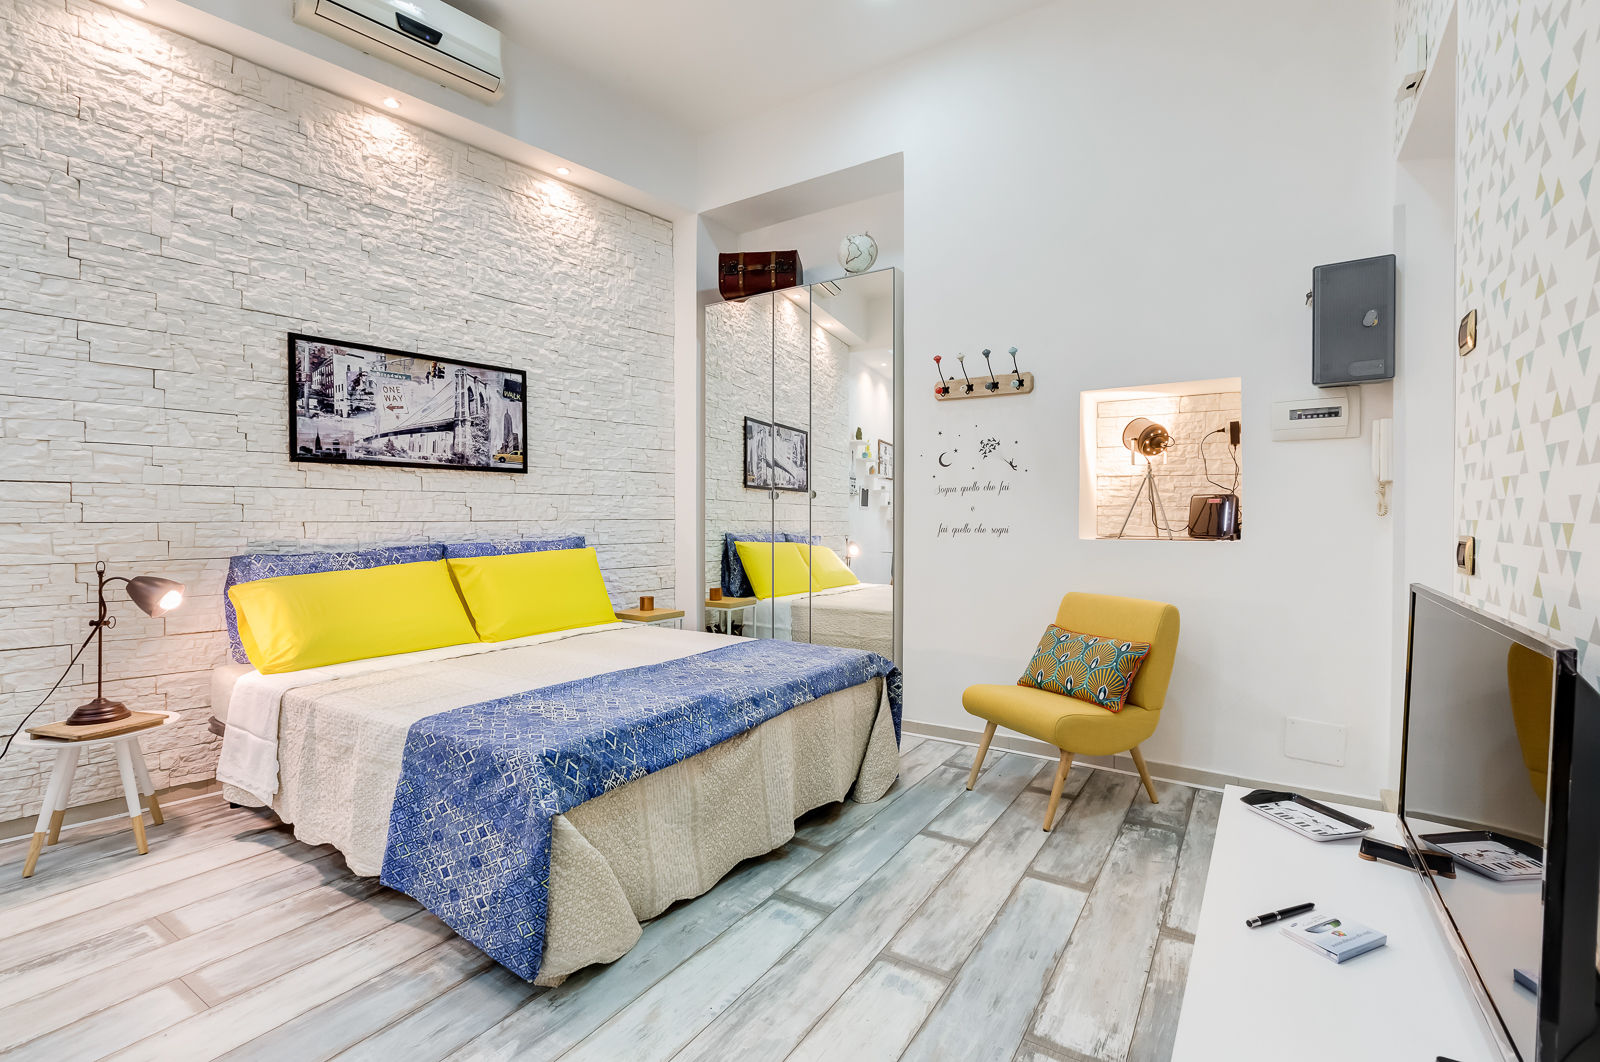 Mini Appartamento Turistico - Roma, Luca Tranquilli - Fotografo Luca Tranquilli - Fotografo Bedroom